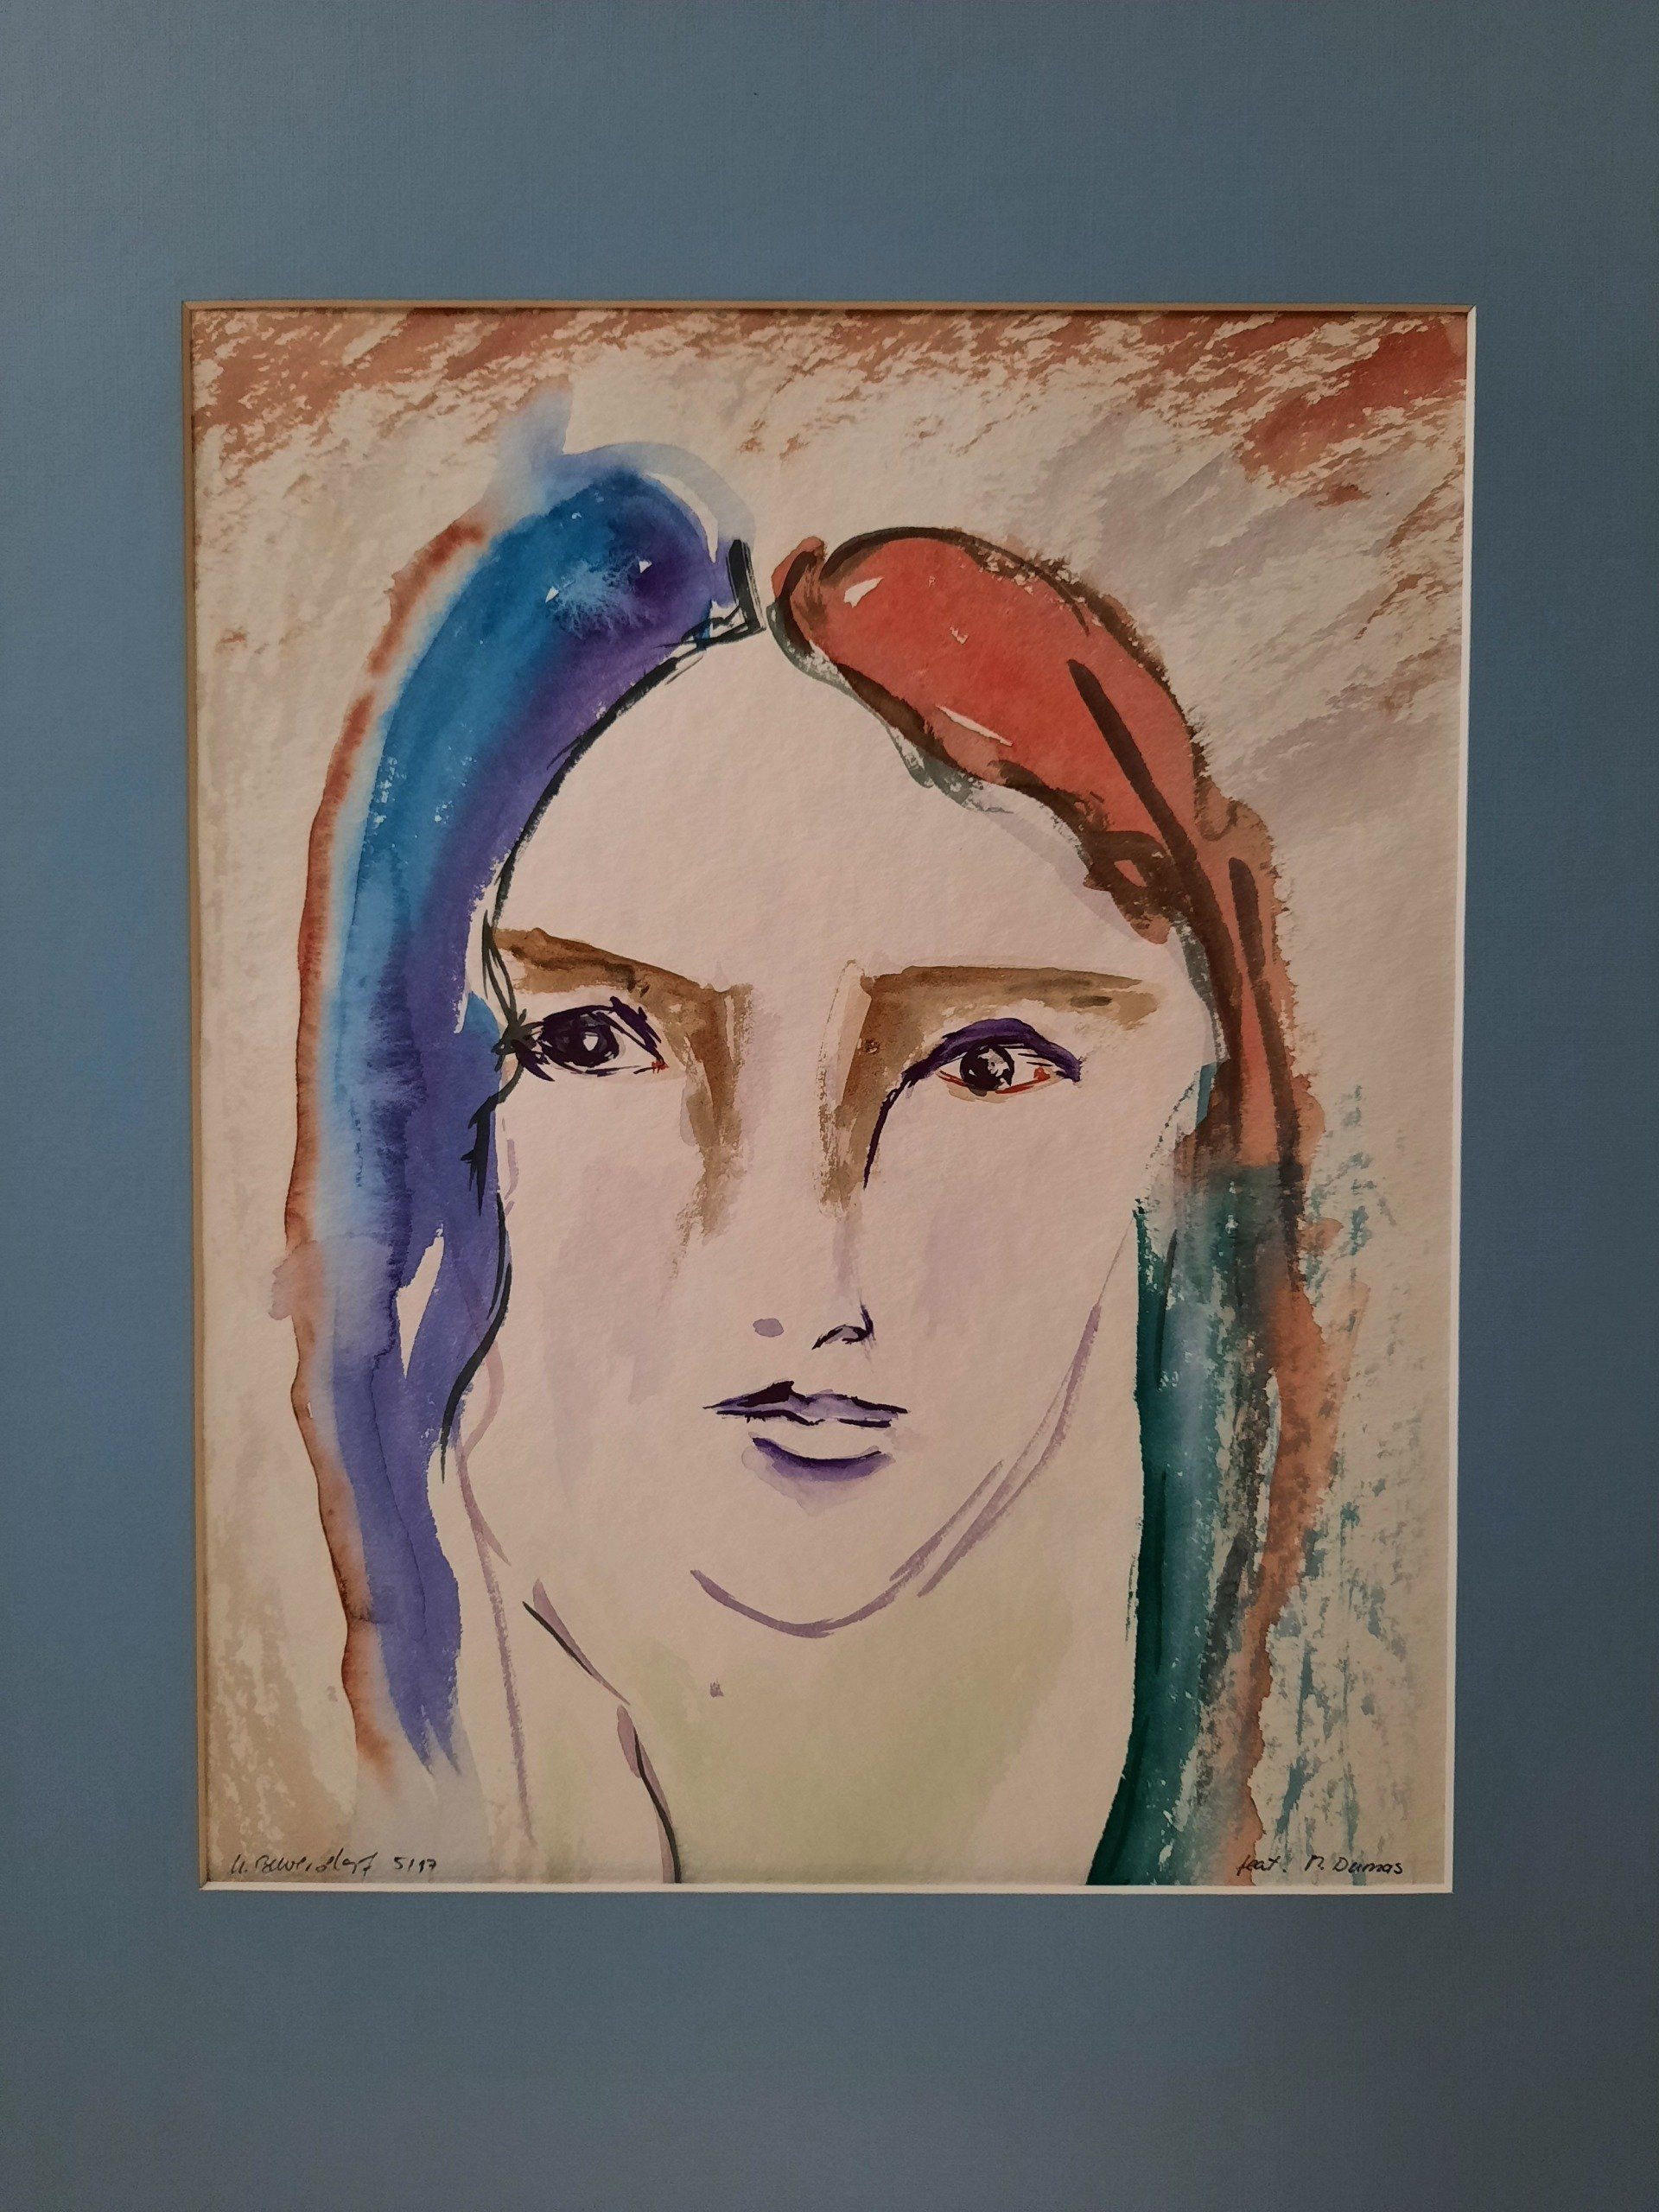 10,00 € 	 Nr. 133,  Aquarell, , 40x50, Portrait  Passpartout  hellblau